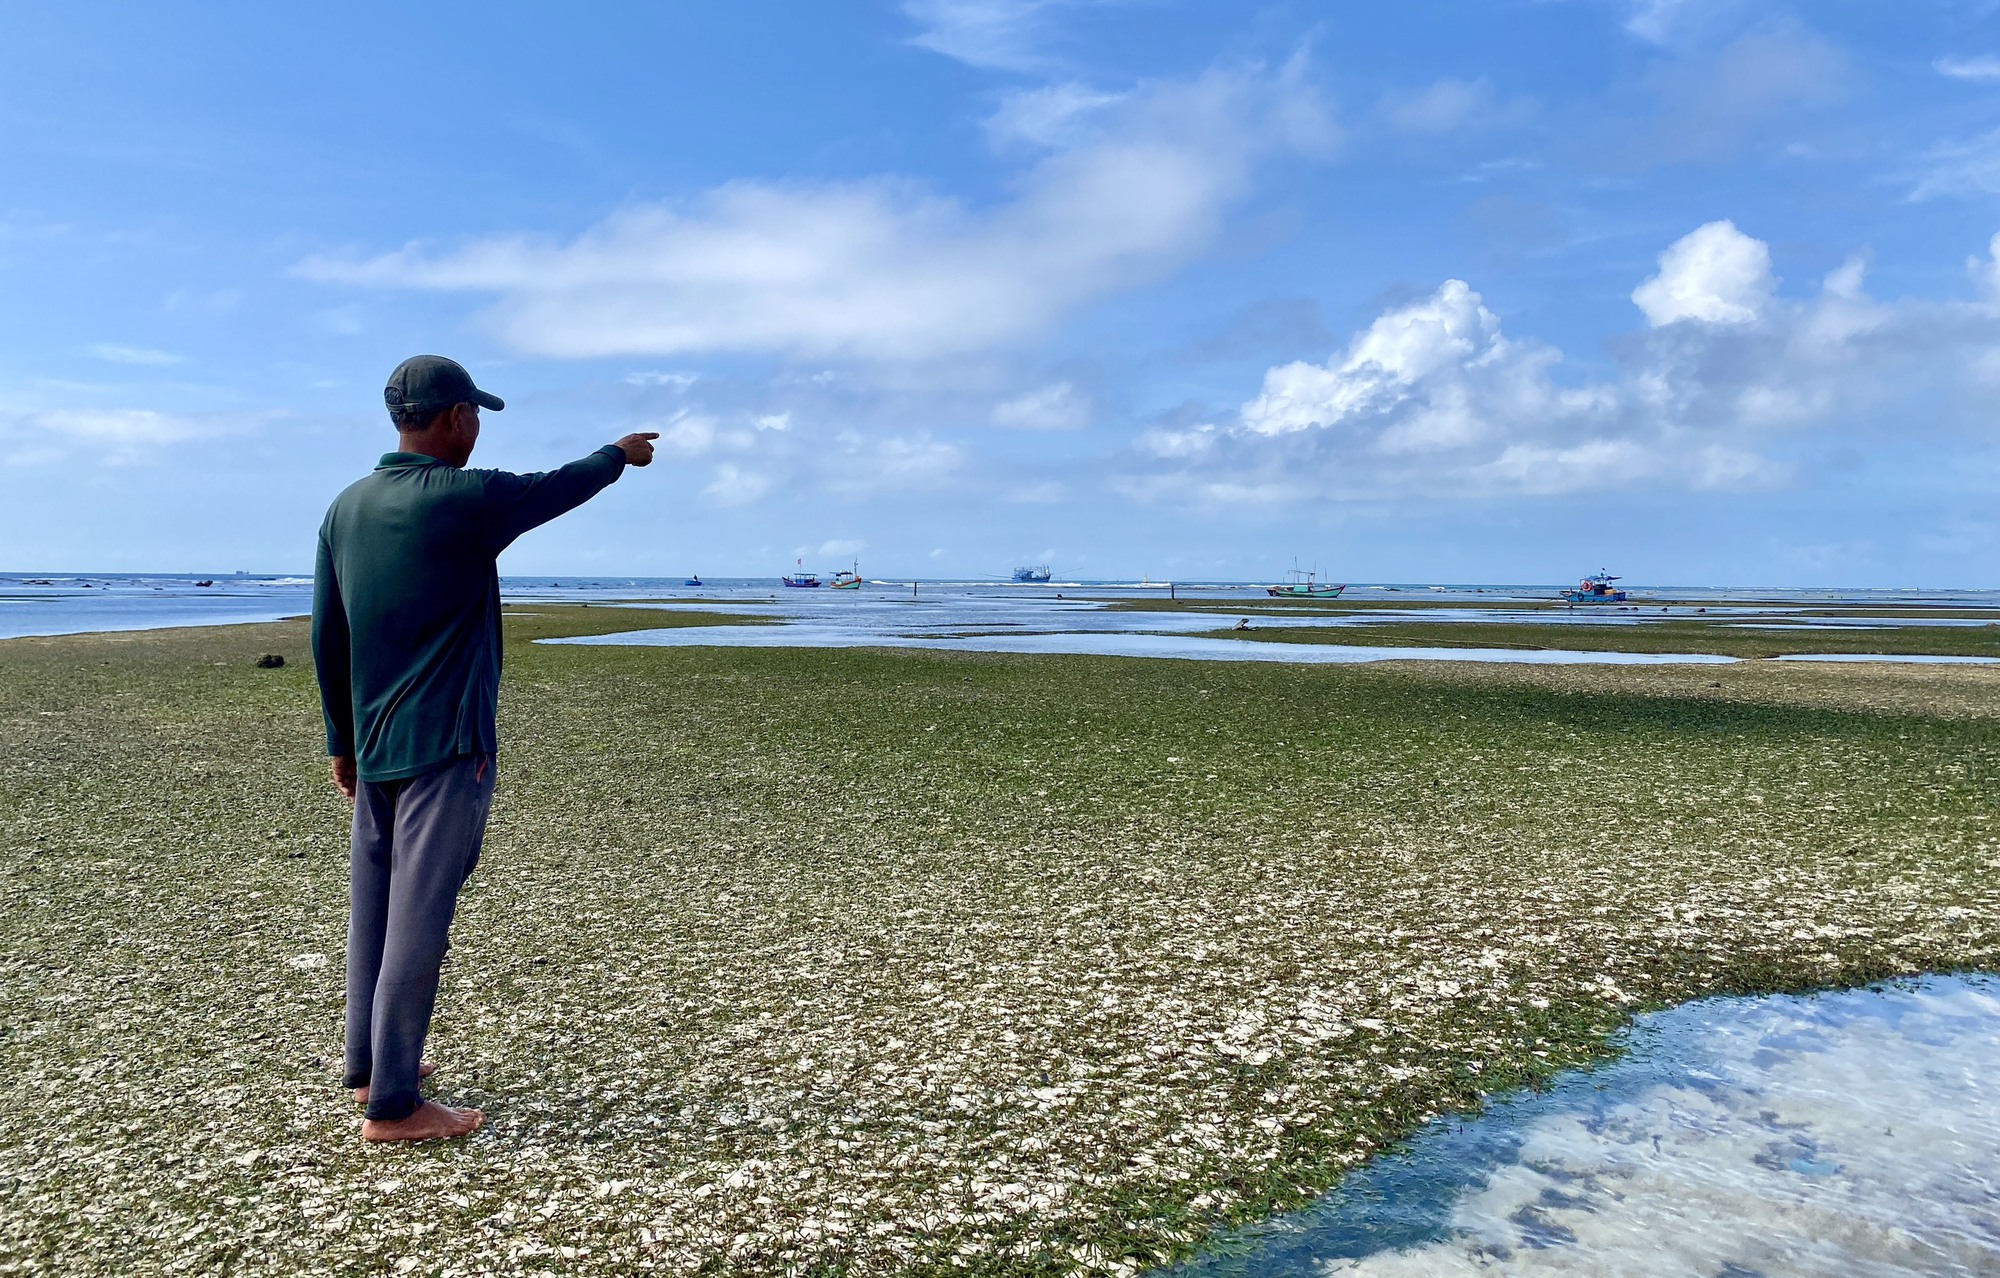 Rong mơ lá hẹ mọc ở gần bờ trên đảo Lý Sơn đẹp như một bức tranh - Ảnh 2.